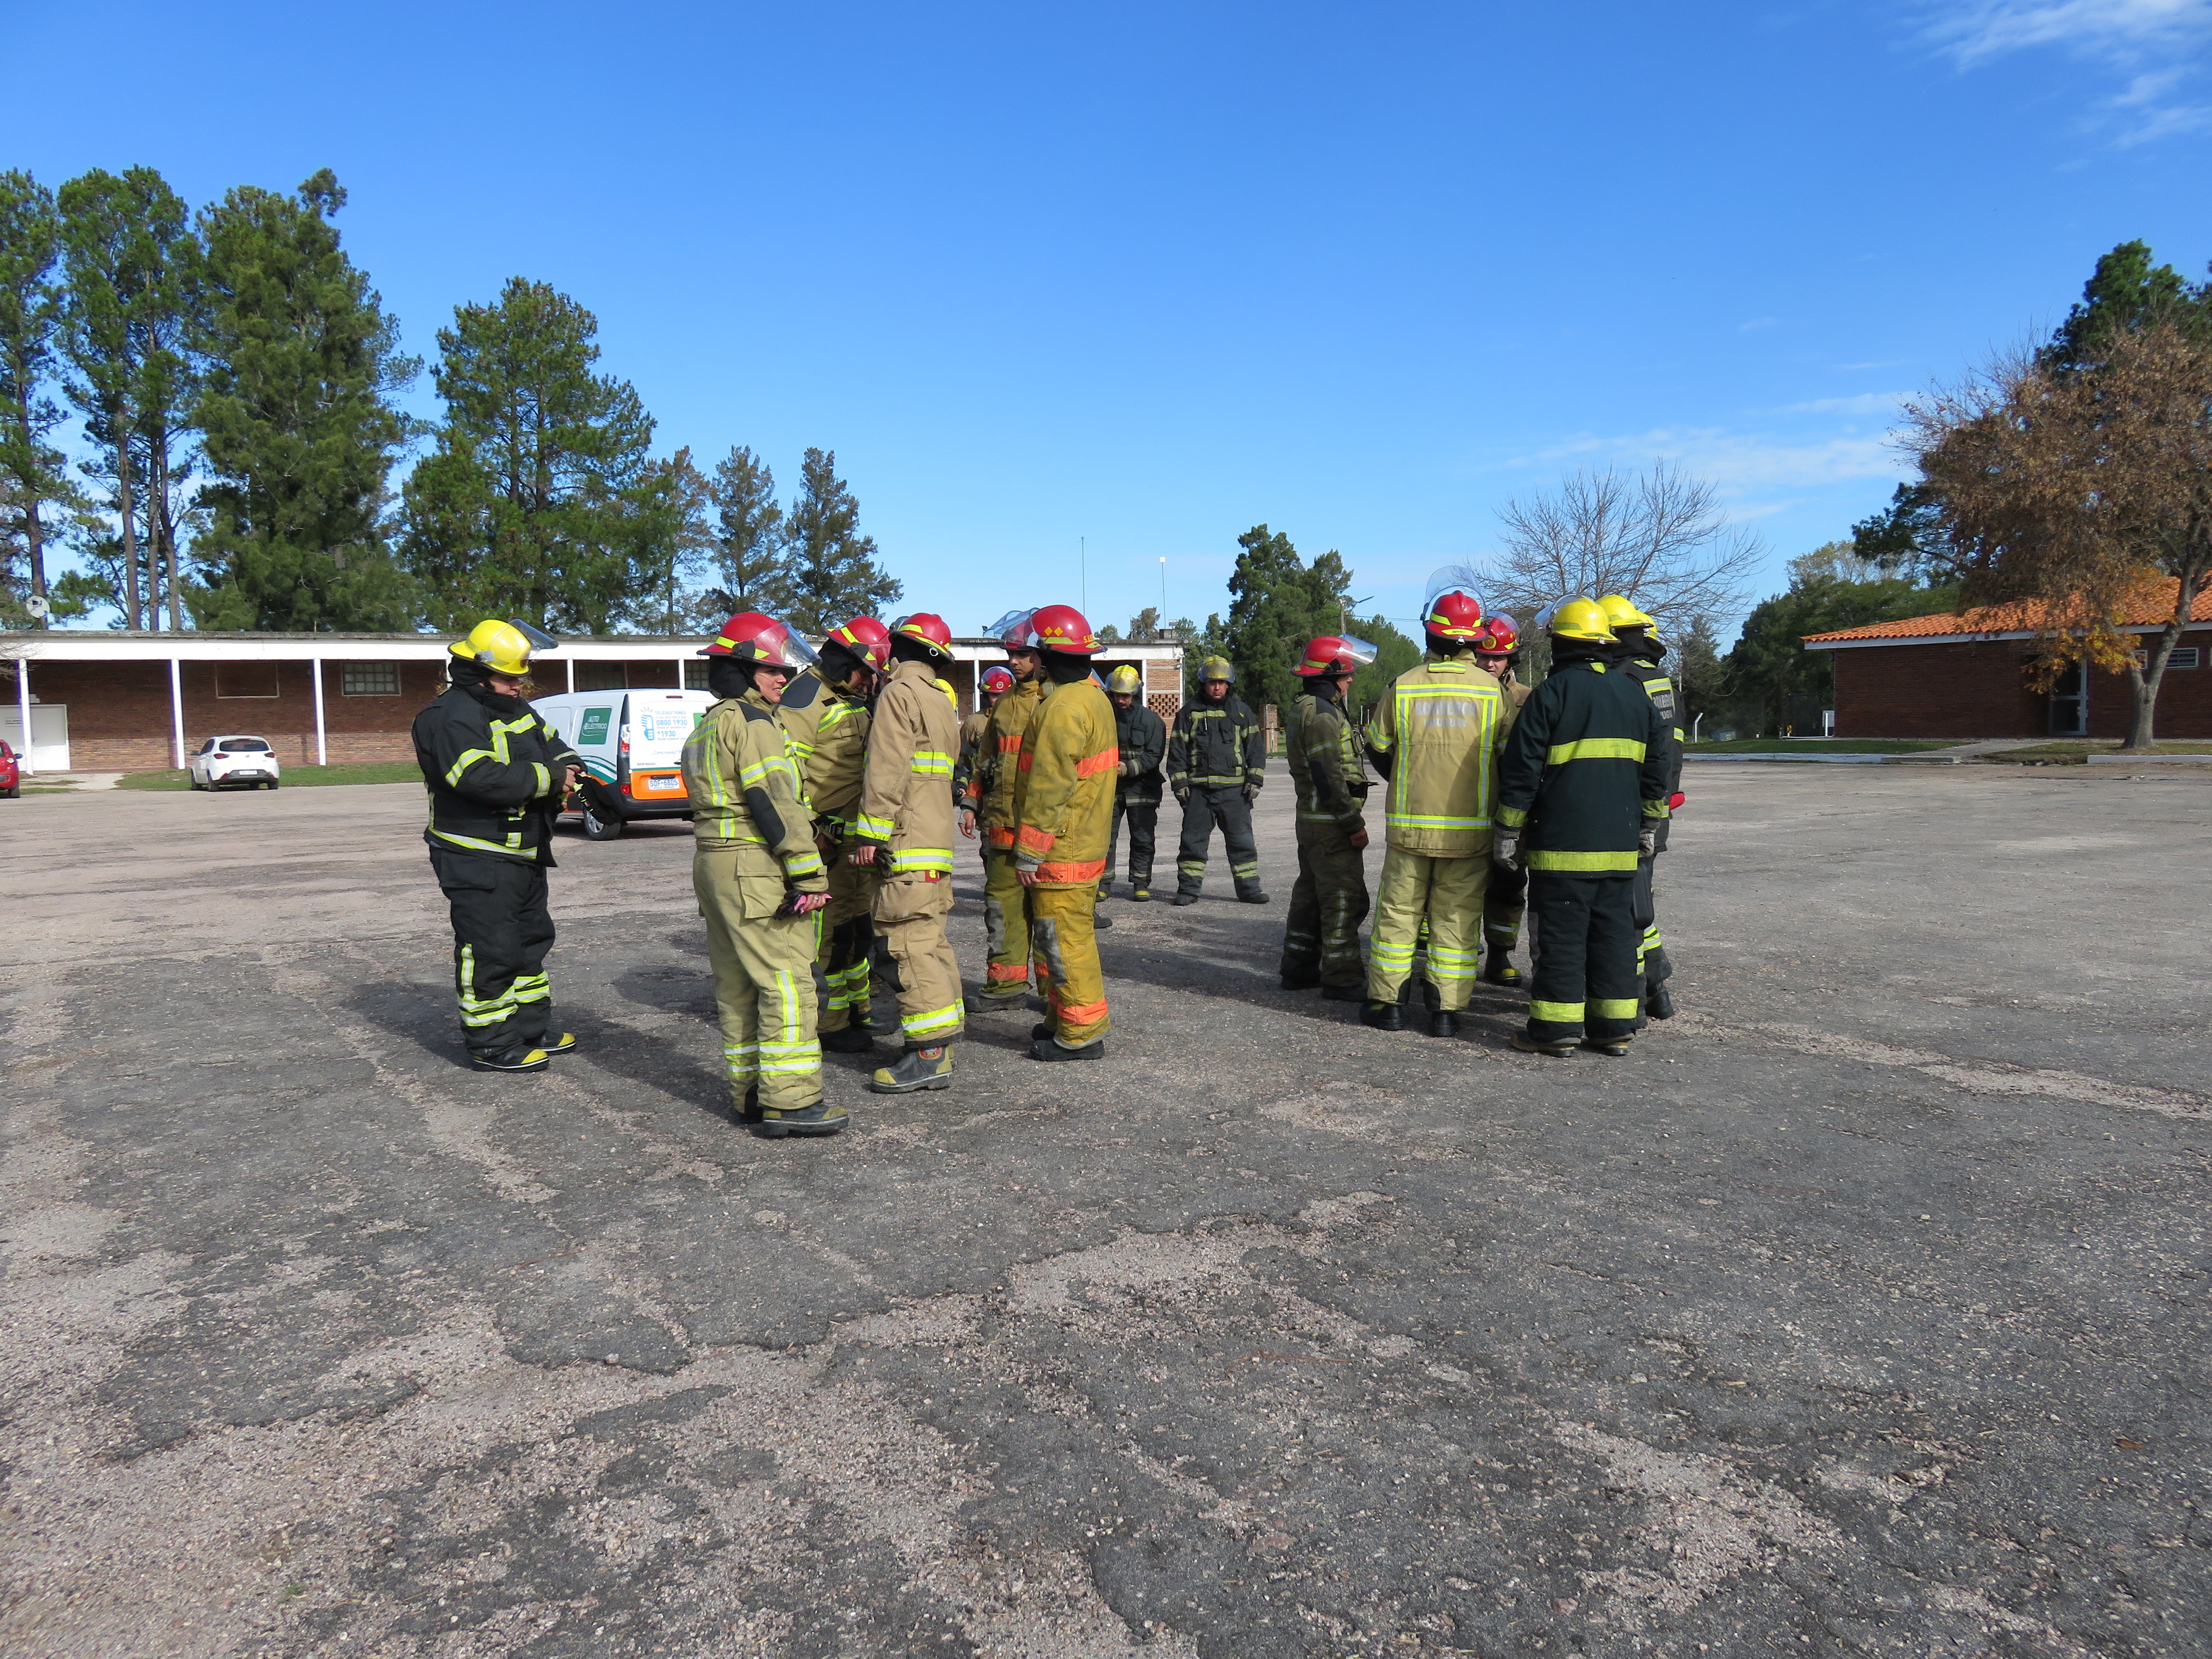 IMG_20230511_3780-USlWUCMK.jpg - El pasado jueves 11 de mayo culminó la &#034;Capacitación para bomberos sobre manejo de incidentes relacionados con la movilidad eléctrica&#034; en donde se capacitaron a 25 bomberos en la Base Aérea de Santa Bernardina del departamento de Durazno. Esta capacitación es la continuación del primer curso regional que organizó la plataforma MOVE del Programa de la Naciones Unidas para el Medio Ambiente a finales de 2022 en Paraguay, donde participaron y se formaron dos bomberos instructores de Uruguay.